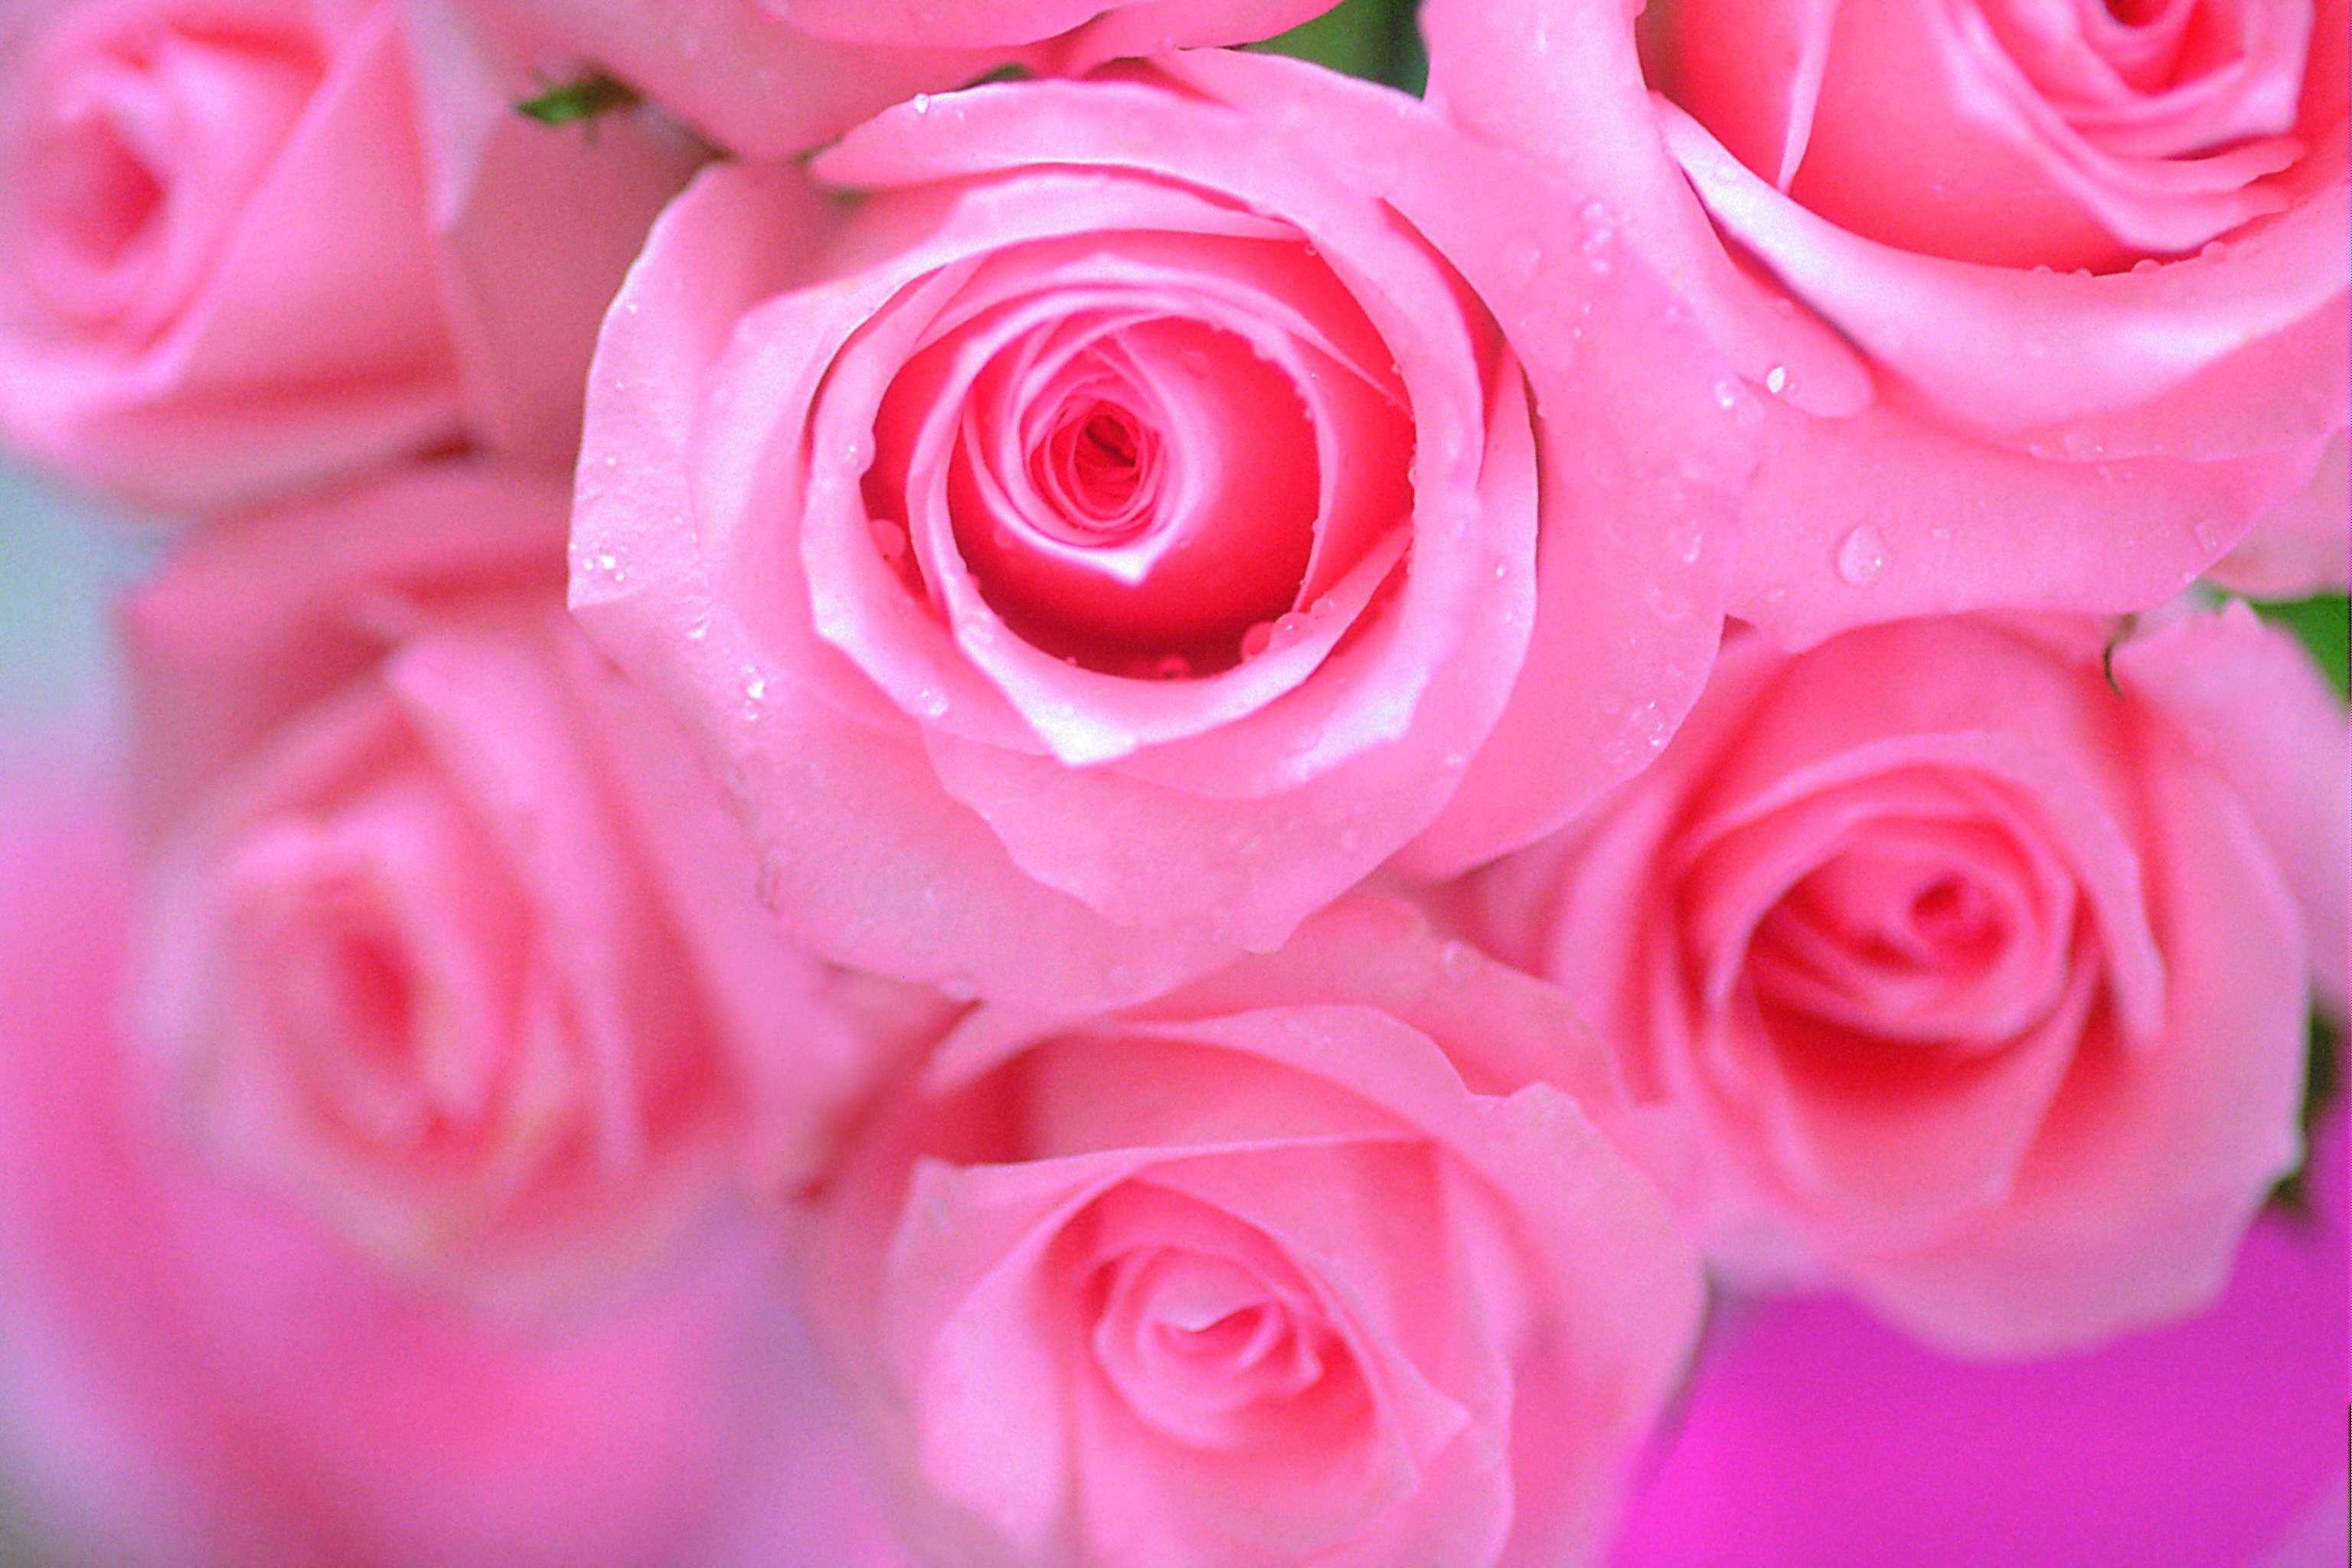 3072x2048 Pink rose wallpaper | Beautiful Pink Rose Flowers Wallpapers | All Flowers  | Send Flowers .